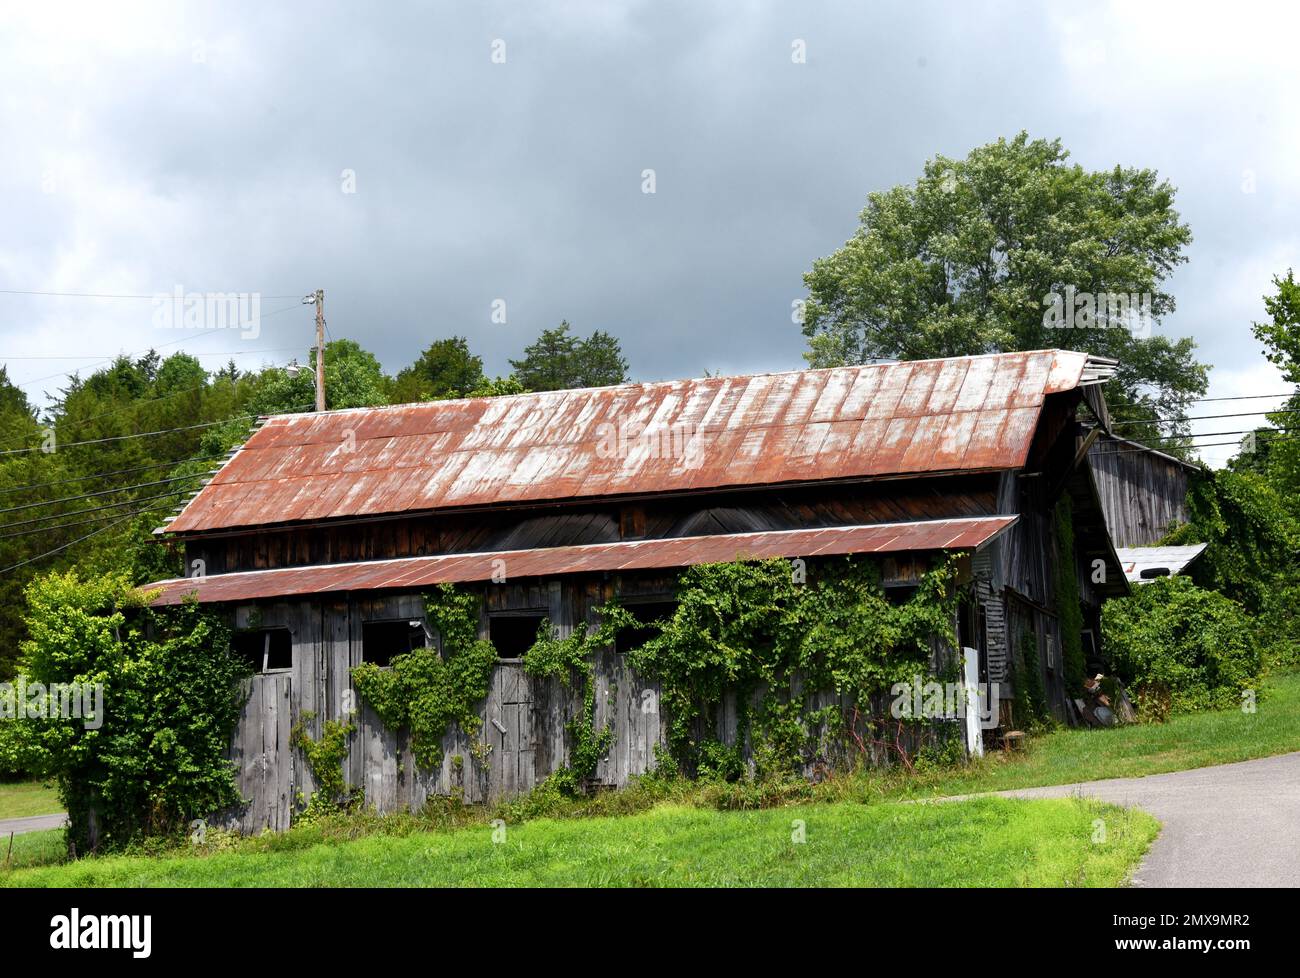 El granero de madera deteriorado, ubicado en Virginia, tiene un techo de hojalata oxidado y una hilera de ventanas cubiertas hacia abajo. Foto de stock